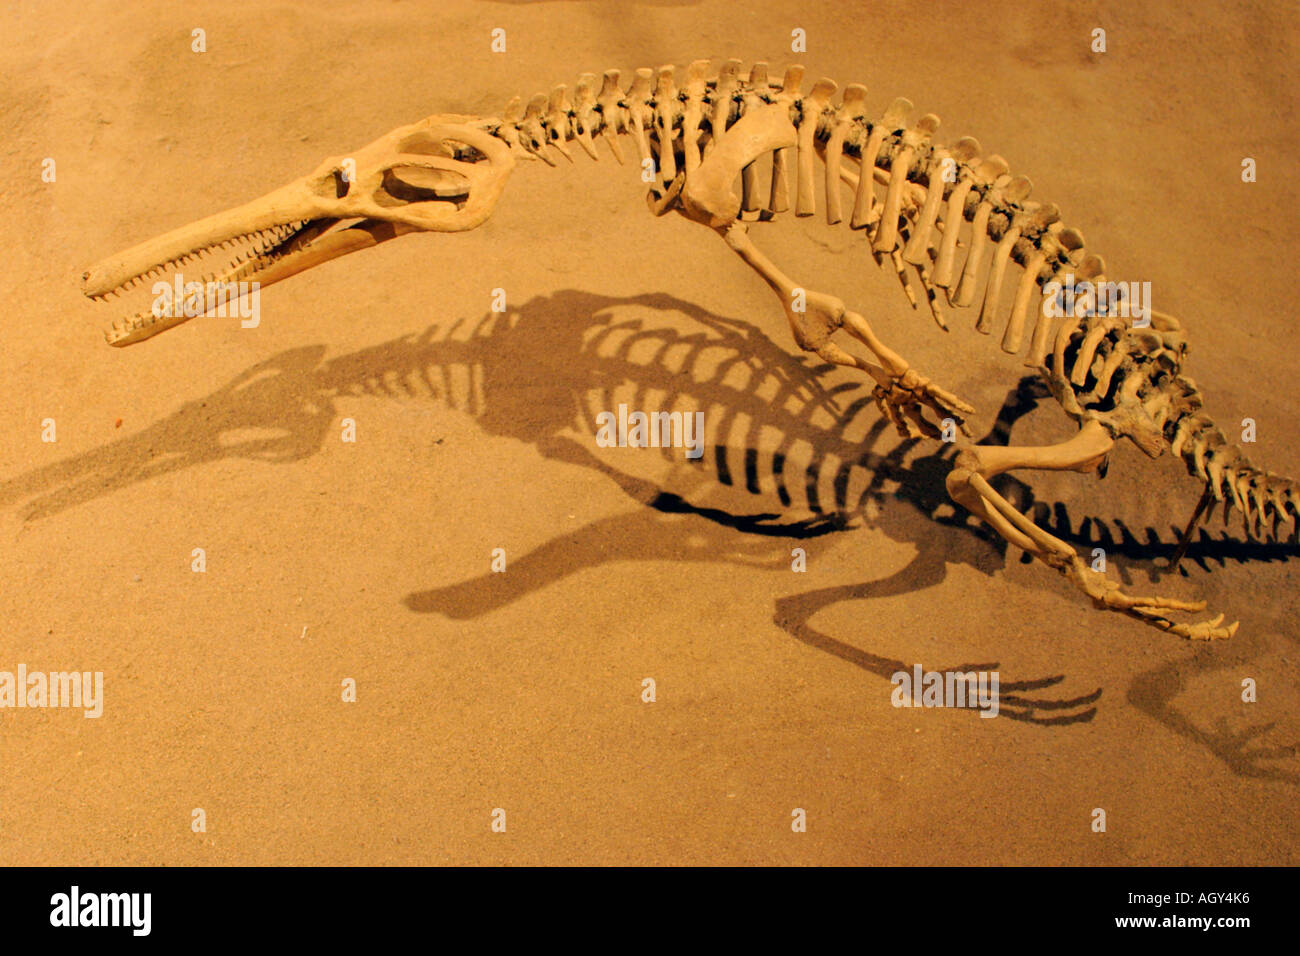 Ritratto di lifesize replica del dinosauro Champosaurus Royal Tyrrell Museum Drumheller Alberta Canada Foto Stock